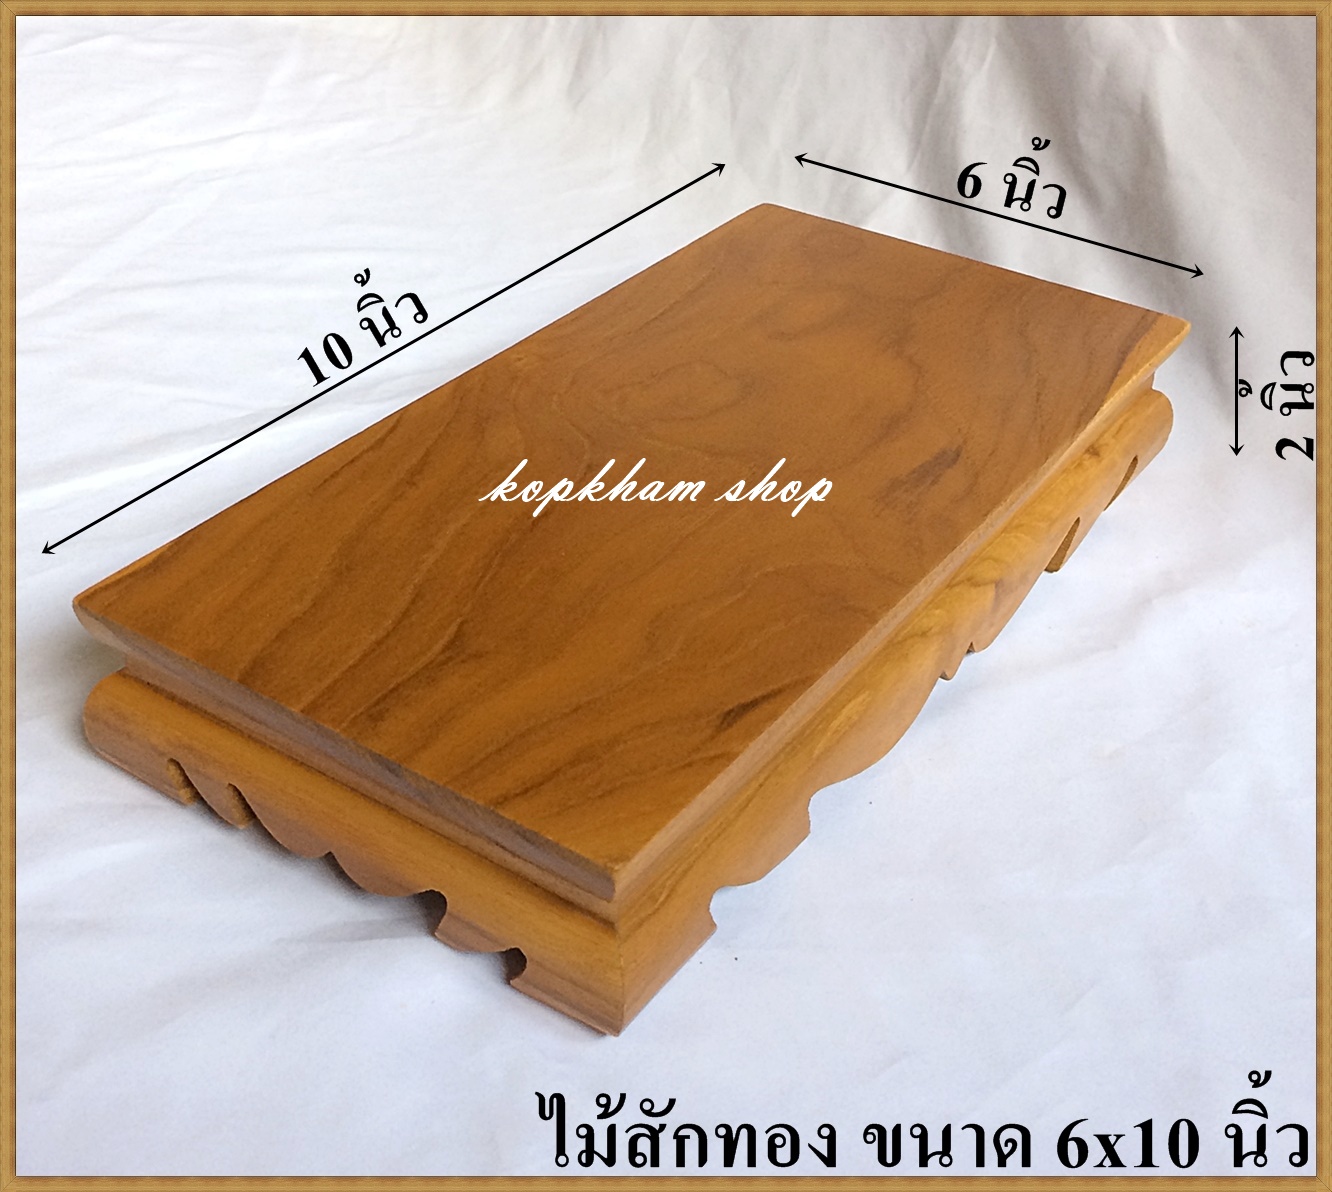 โต๊ะยอด ขาต่ำ ขนาด 6*10*ส 2 นิ้ว โต๊ะหมู่บูชา โต๊ะ ฐานรองพระ แท่นรองพระ ตั่งวางพระ โต๊ะเสริม ฐานรองพระไม้สัก ชั้นวางพระไม้สัก